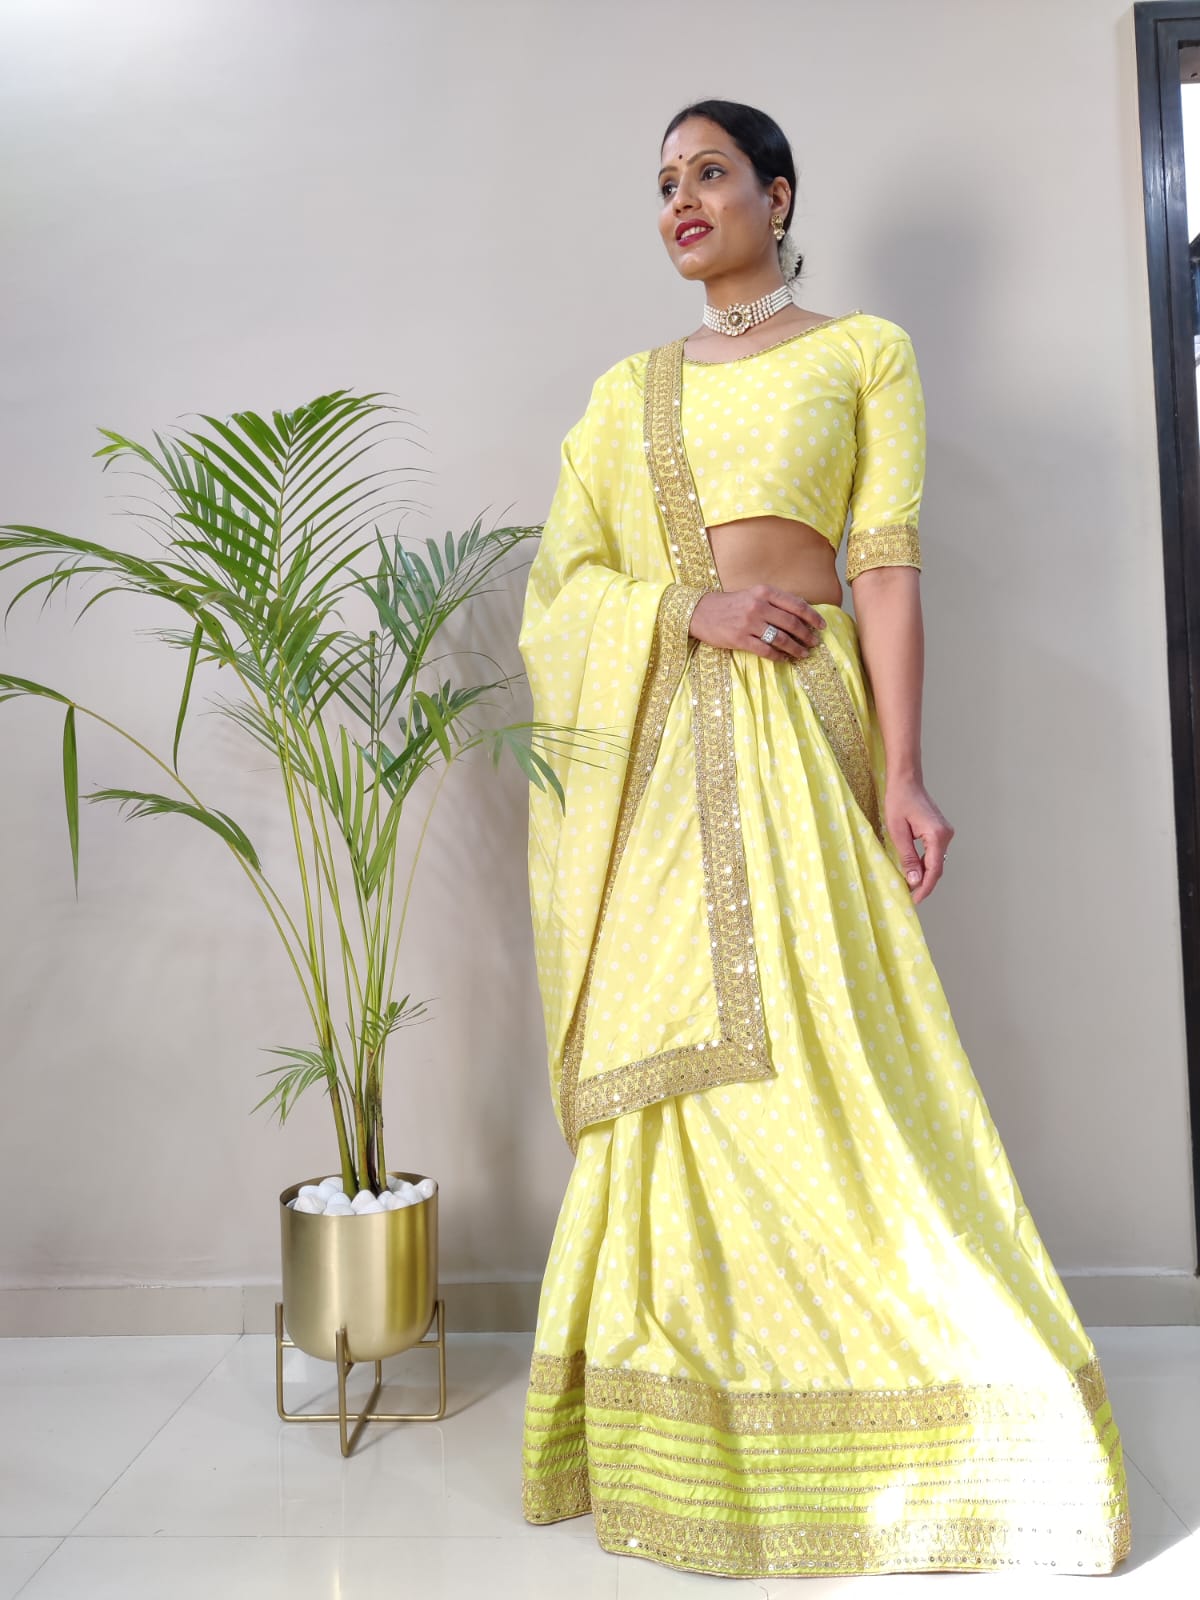 Palkhi Fashion | Indian Clothes Online in USA | Clothing Store Houston |  Designer lehenga choli, Indian outfits, Lehenga